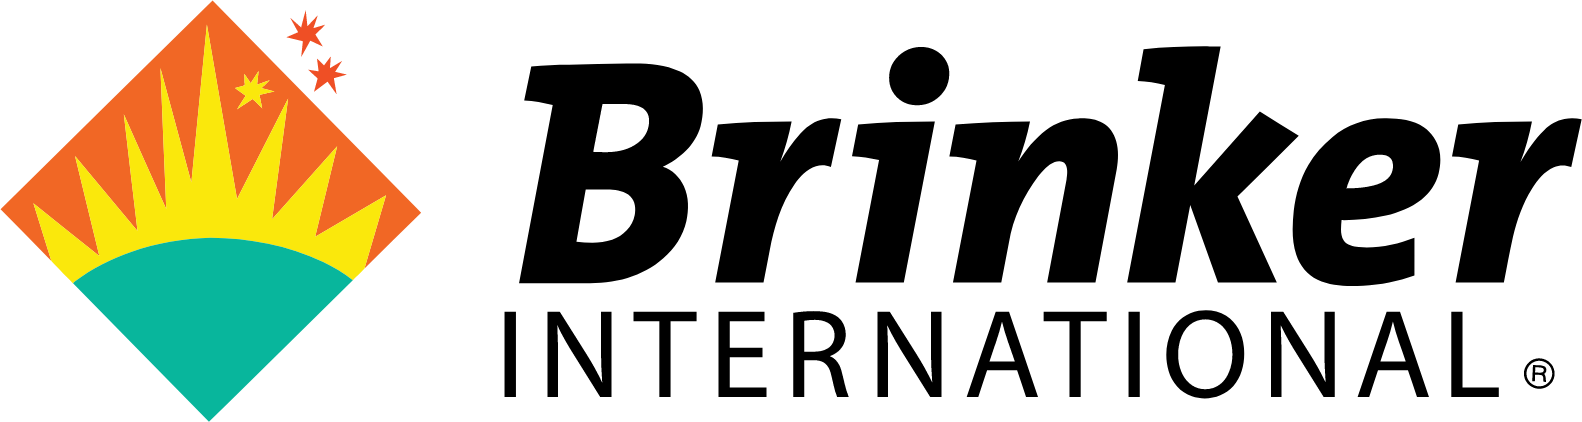 Brinker International
 logo large (transparent PNG)